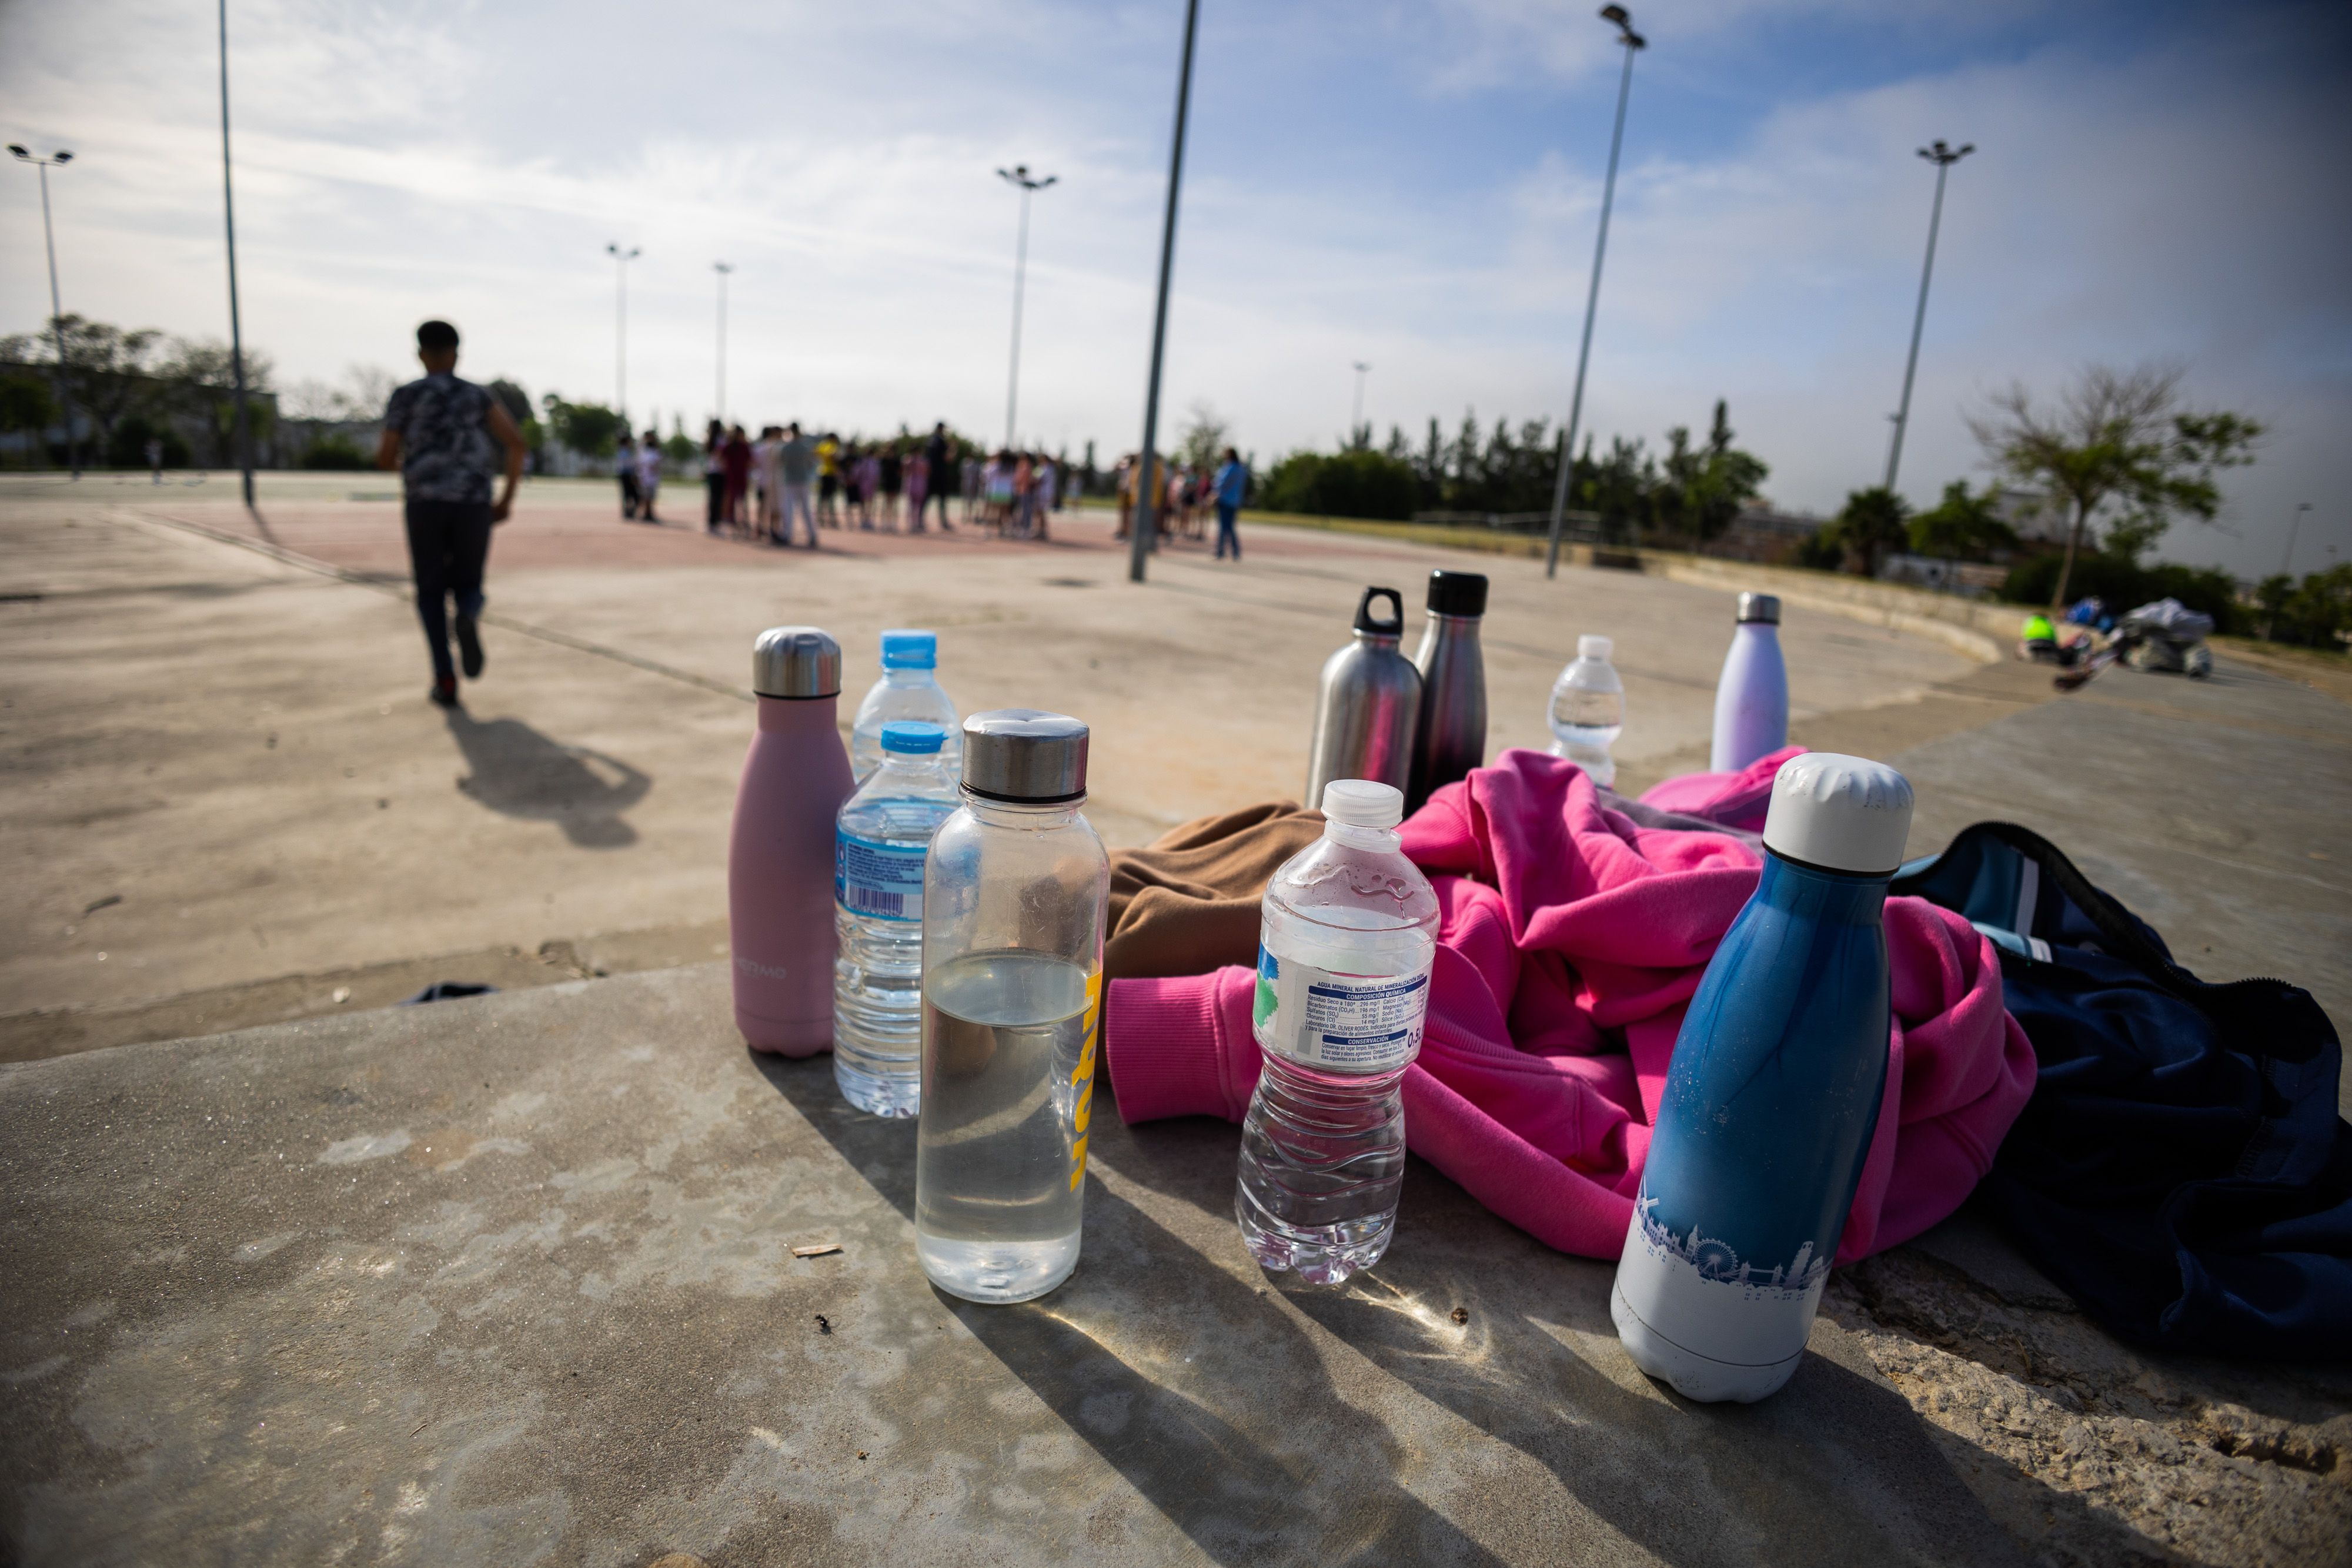 Cambio de tiempo en Andalucía. Botellas de agua contra el calor en un colegio público, en una imagen reciente.